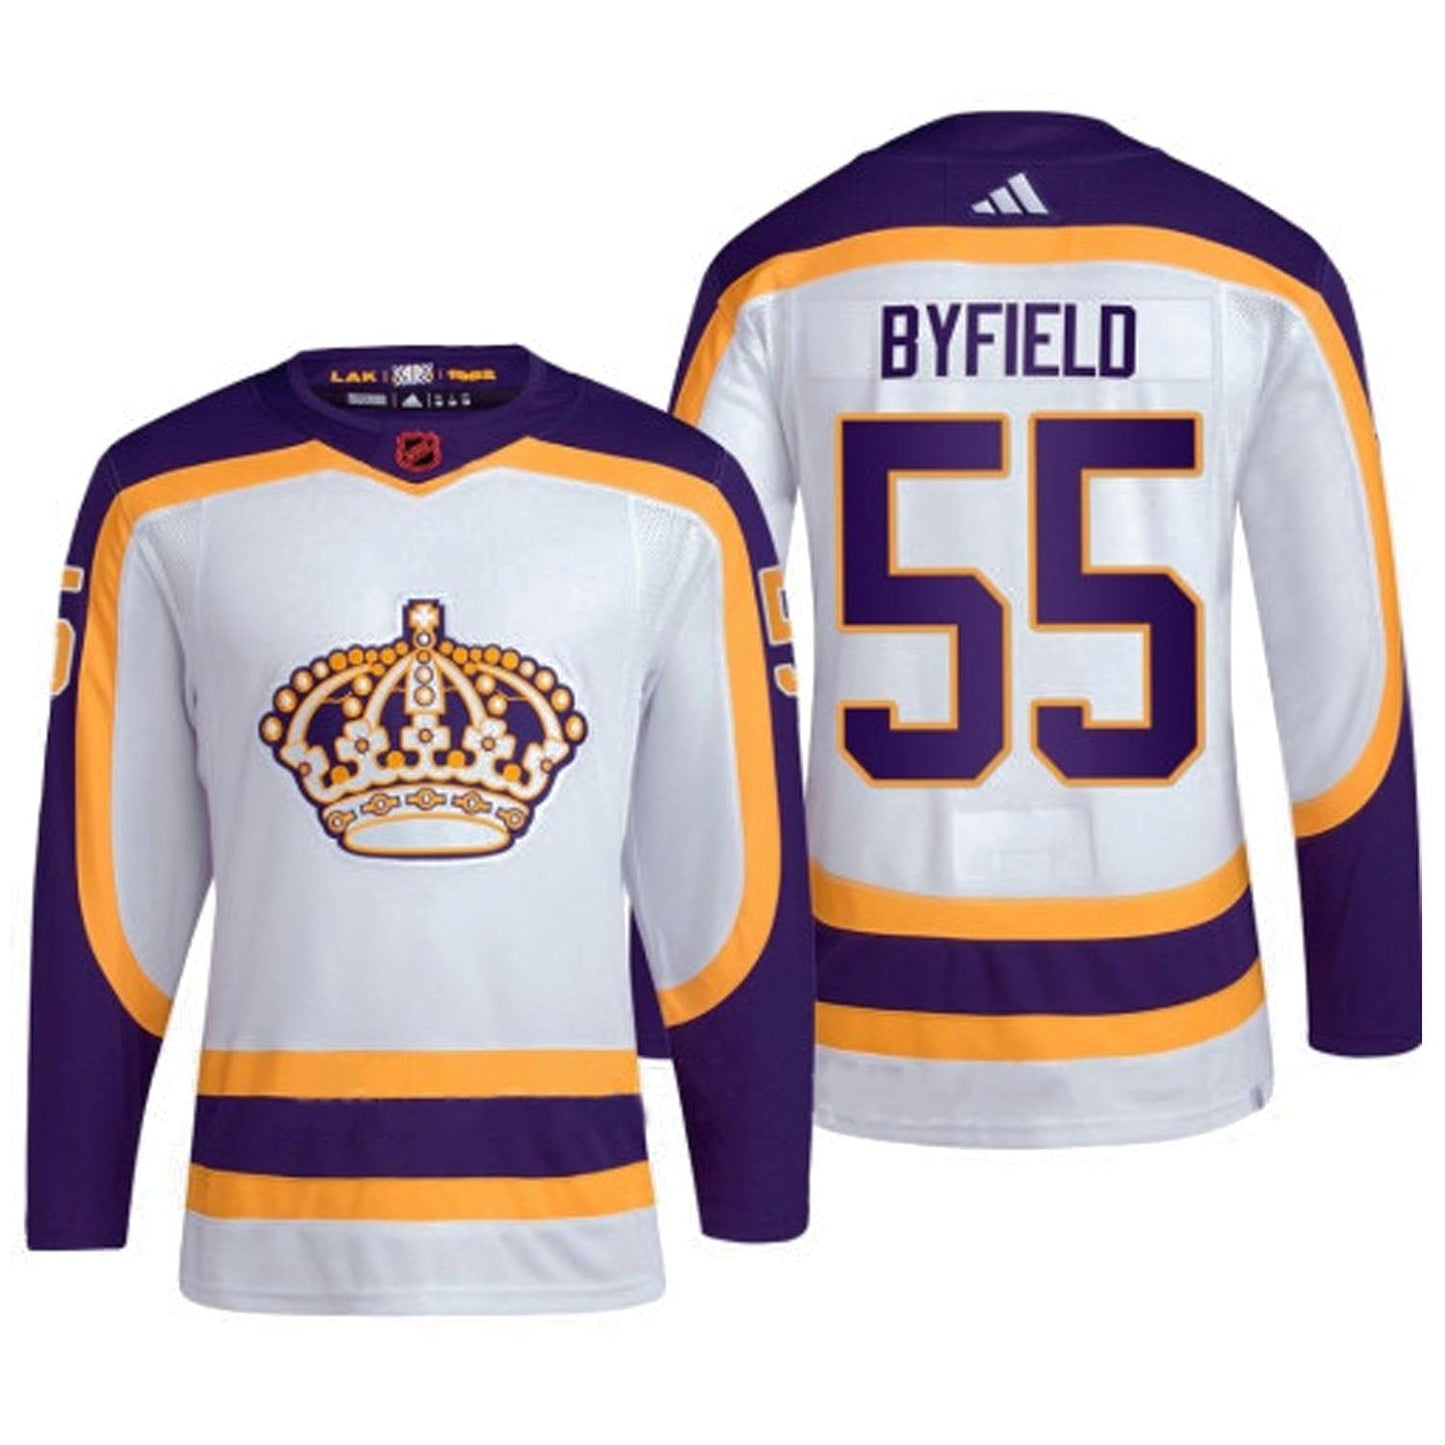 NHL Quinton Byfield La Kings 55 Jersey